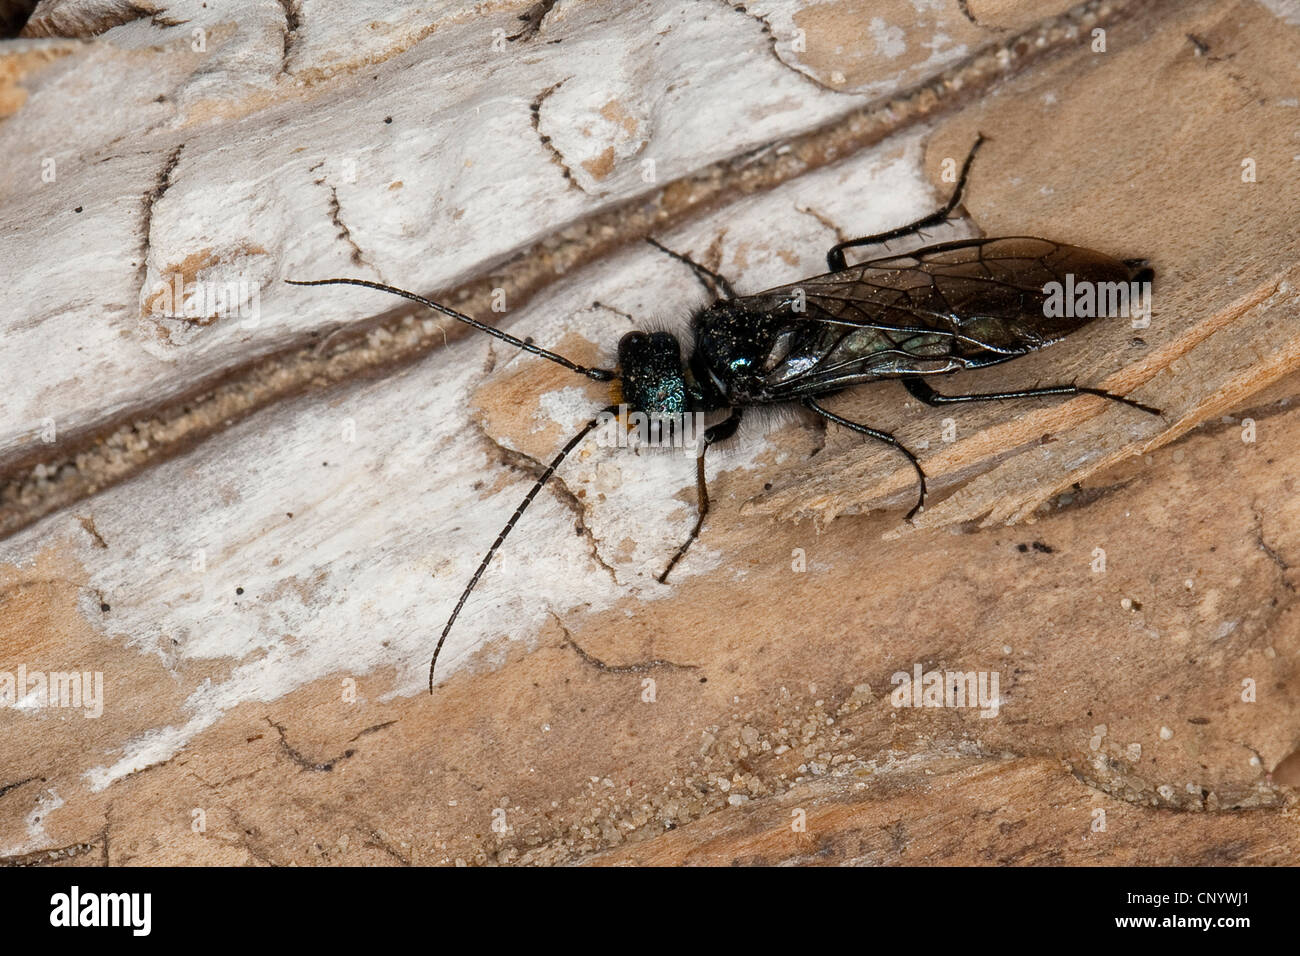 Pine false webworm (Acantholyda erythrocephala, Acantholyda flaviceps), male sitting on bark, Germany Stock Photo